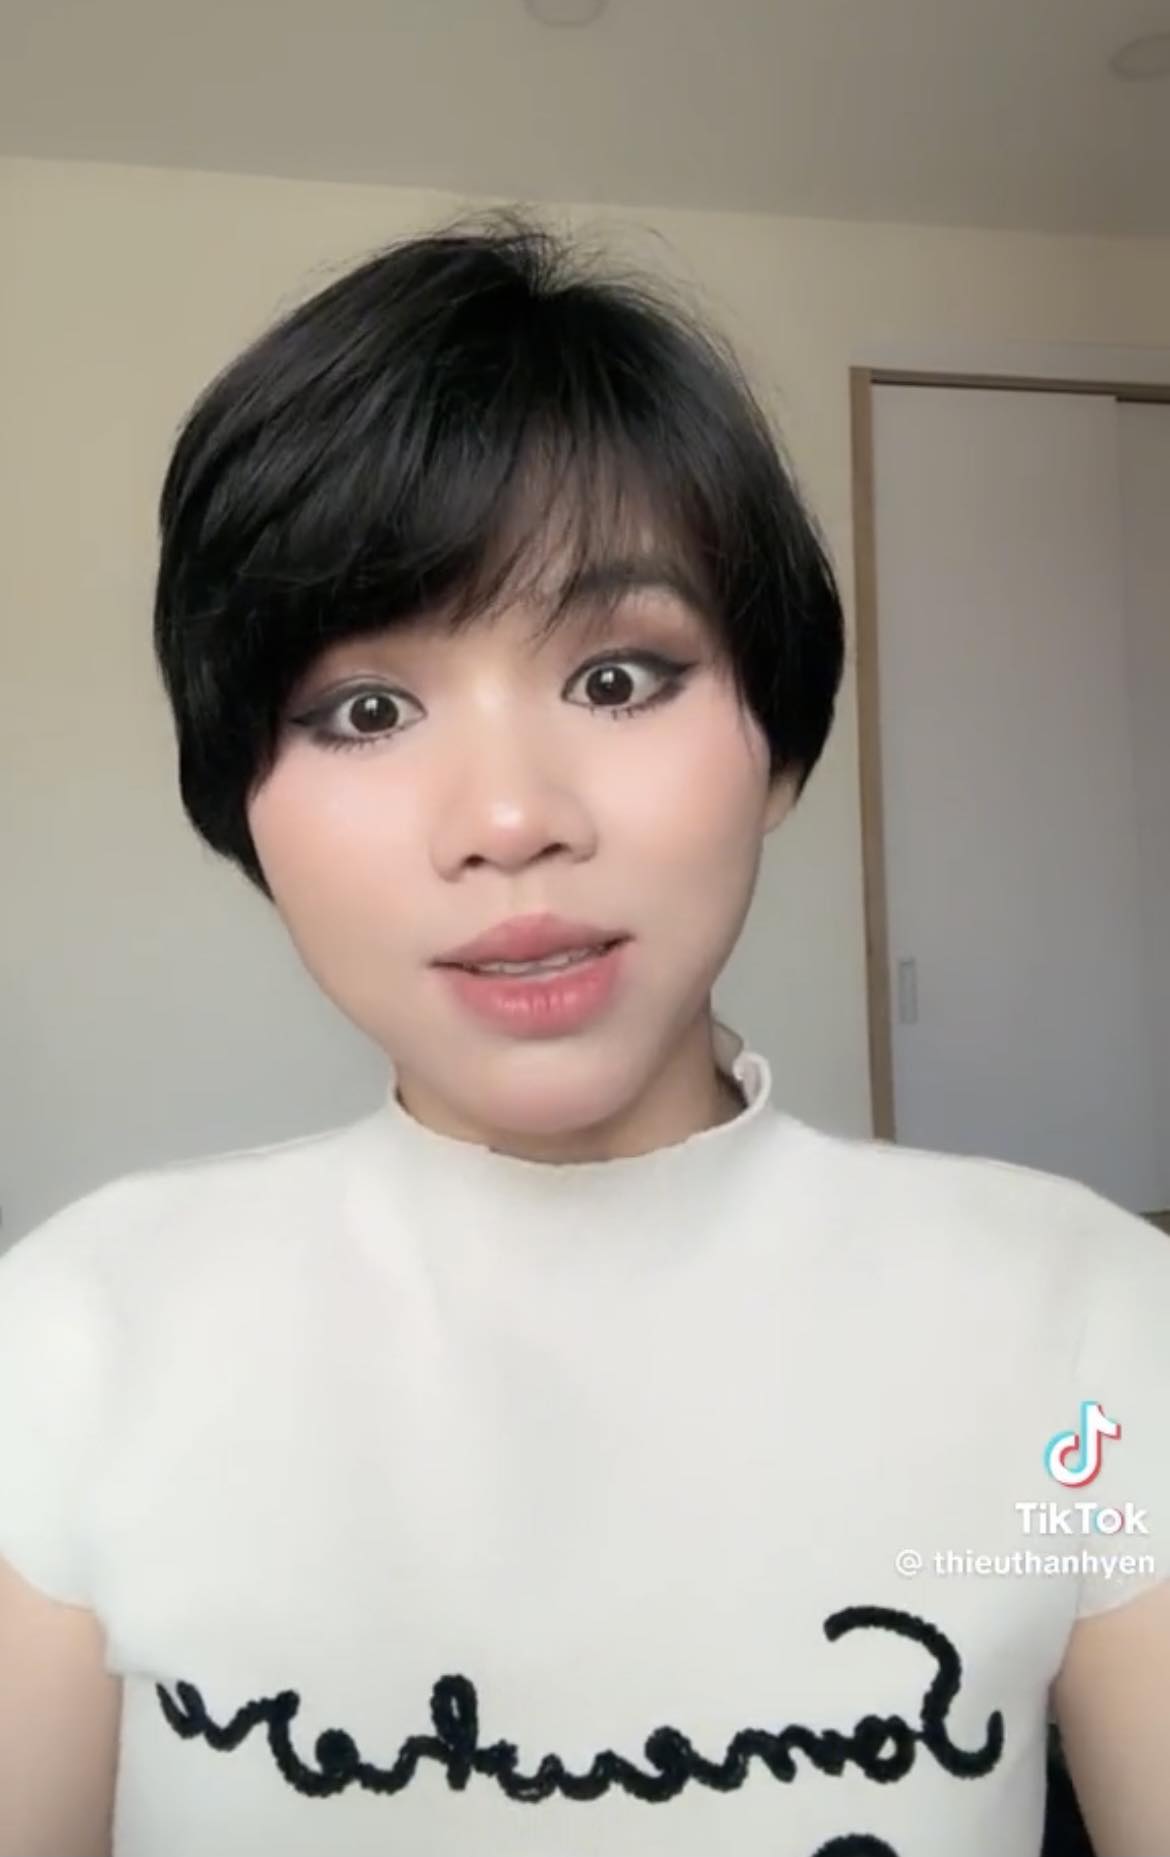 Nữ Tiktoker Việt thừa nhận bị bệnh nan y, cảnh báo nguyên nhân từ nhiều thói quen xấu ai cũng gặp phải - ảnh 3